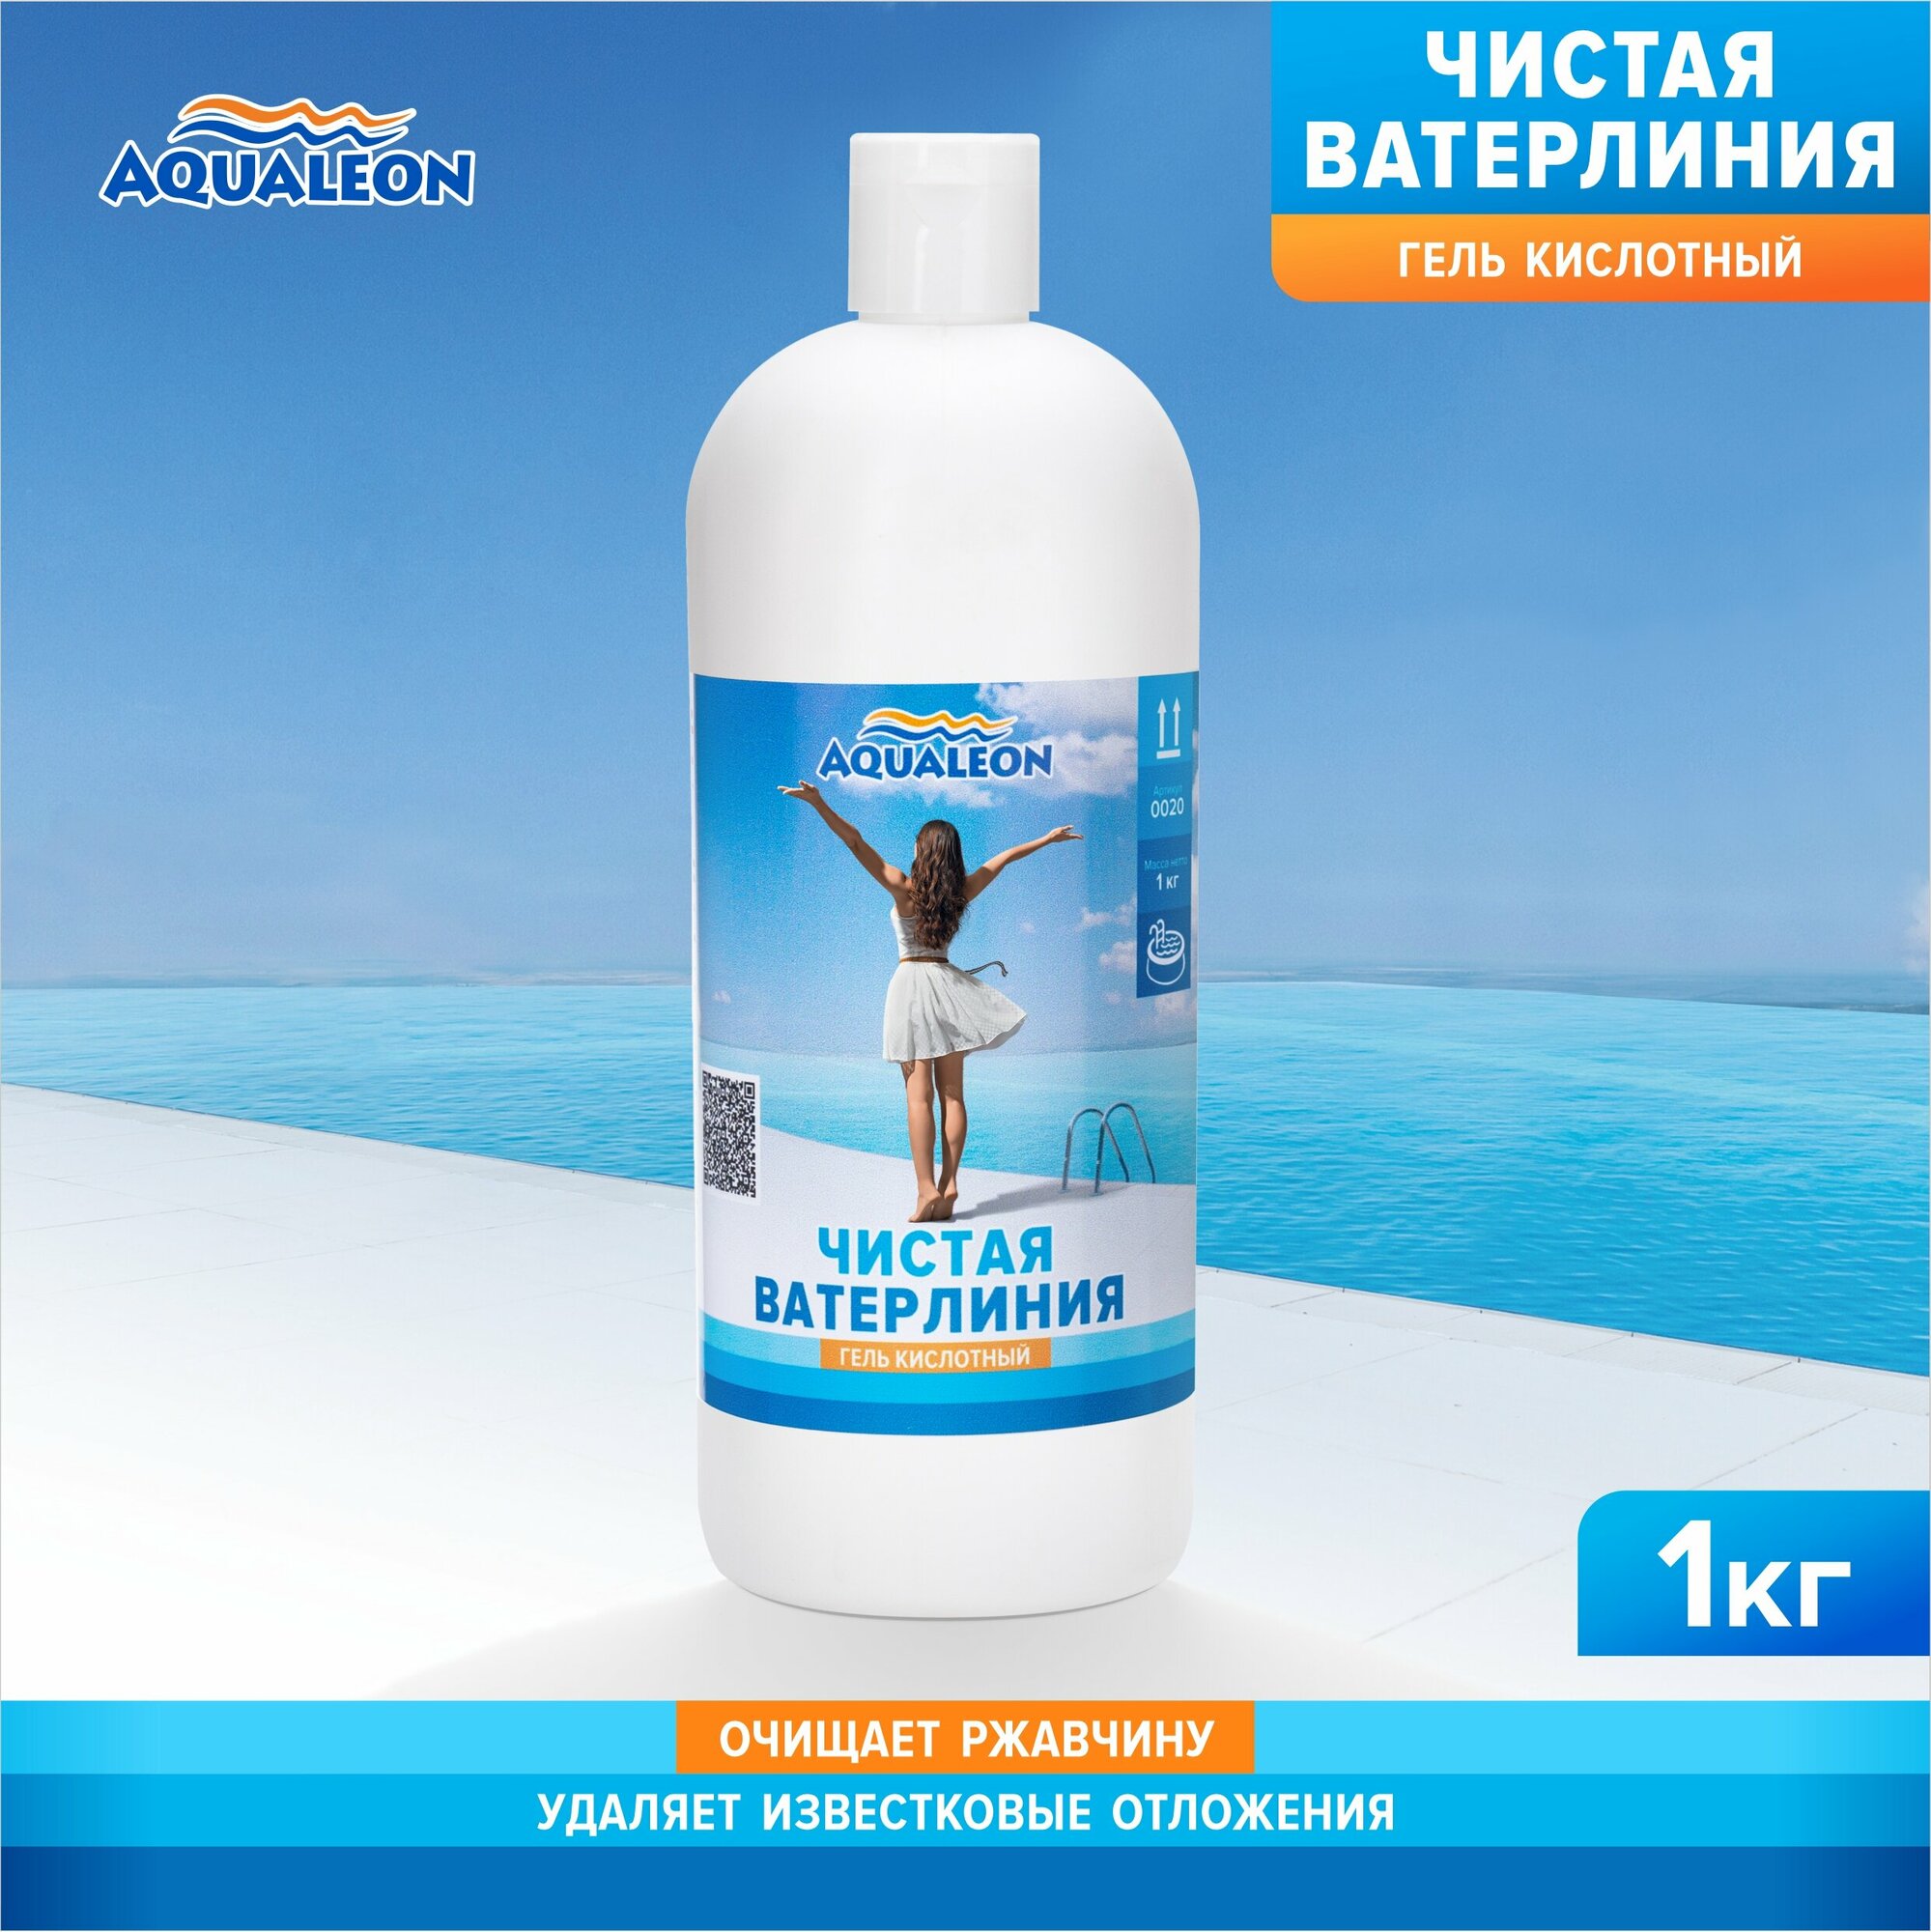 Очиститель ватерлинии Aqualeon (гель кислотный) 1 кг